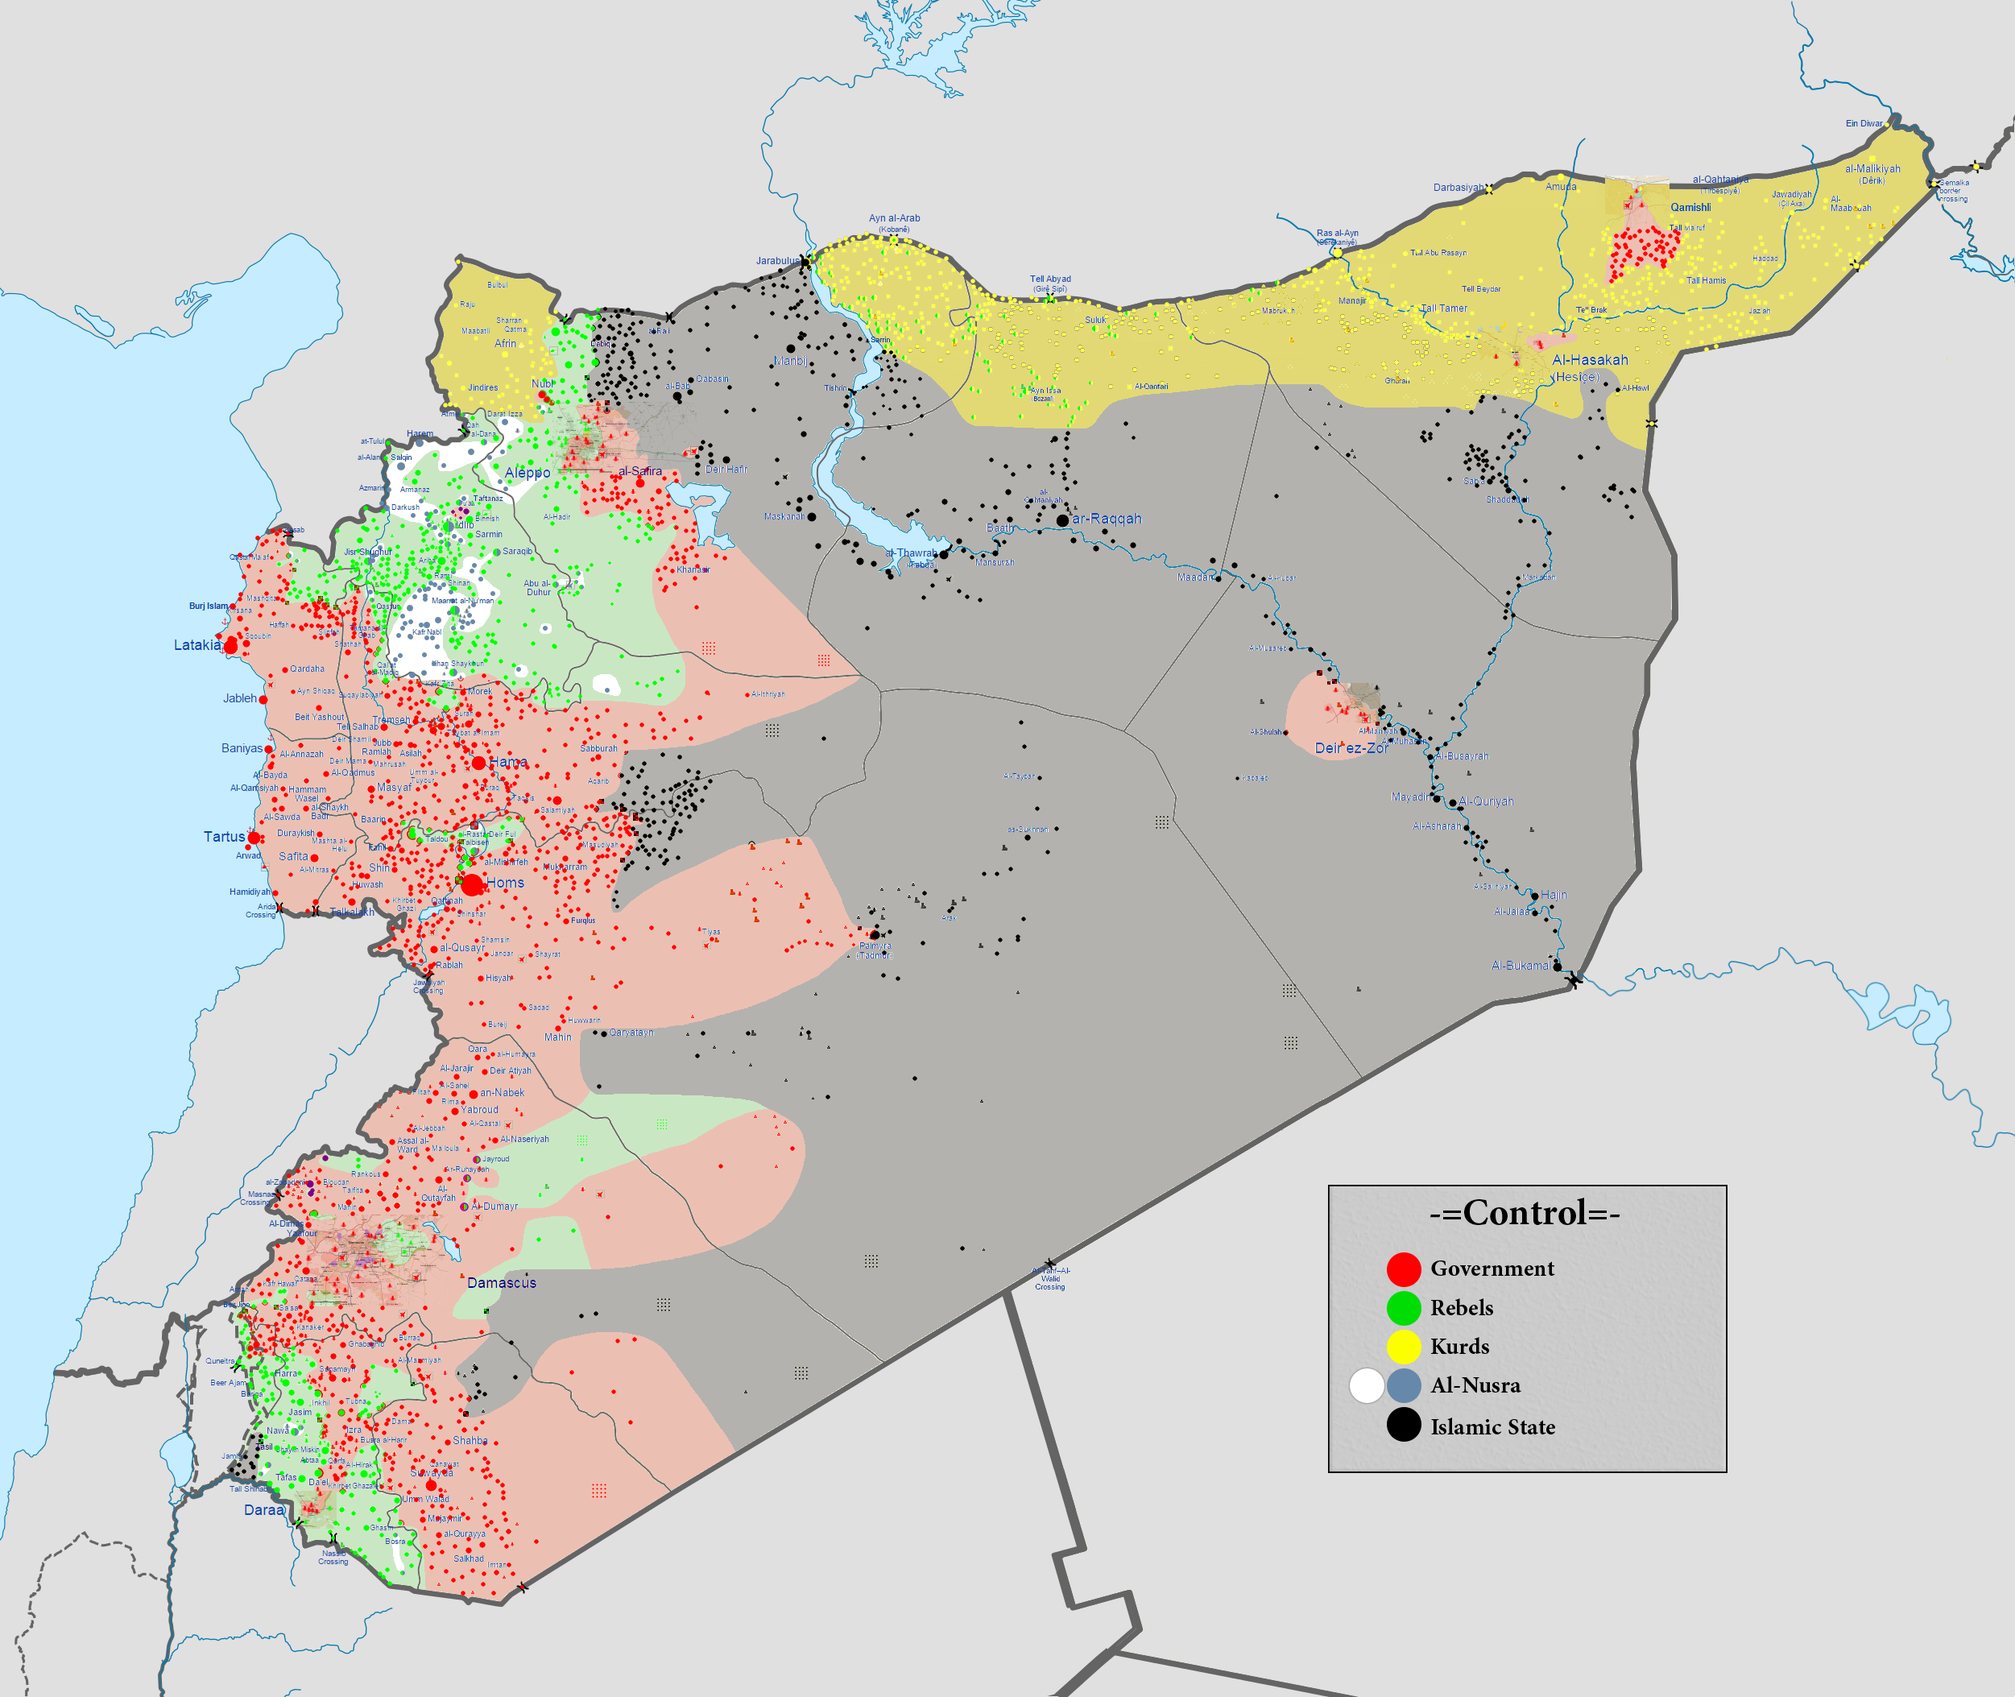 Karte der Gruppen im Bürgerkrieg von Syrien — Extremnews — Die etwas